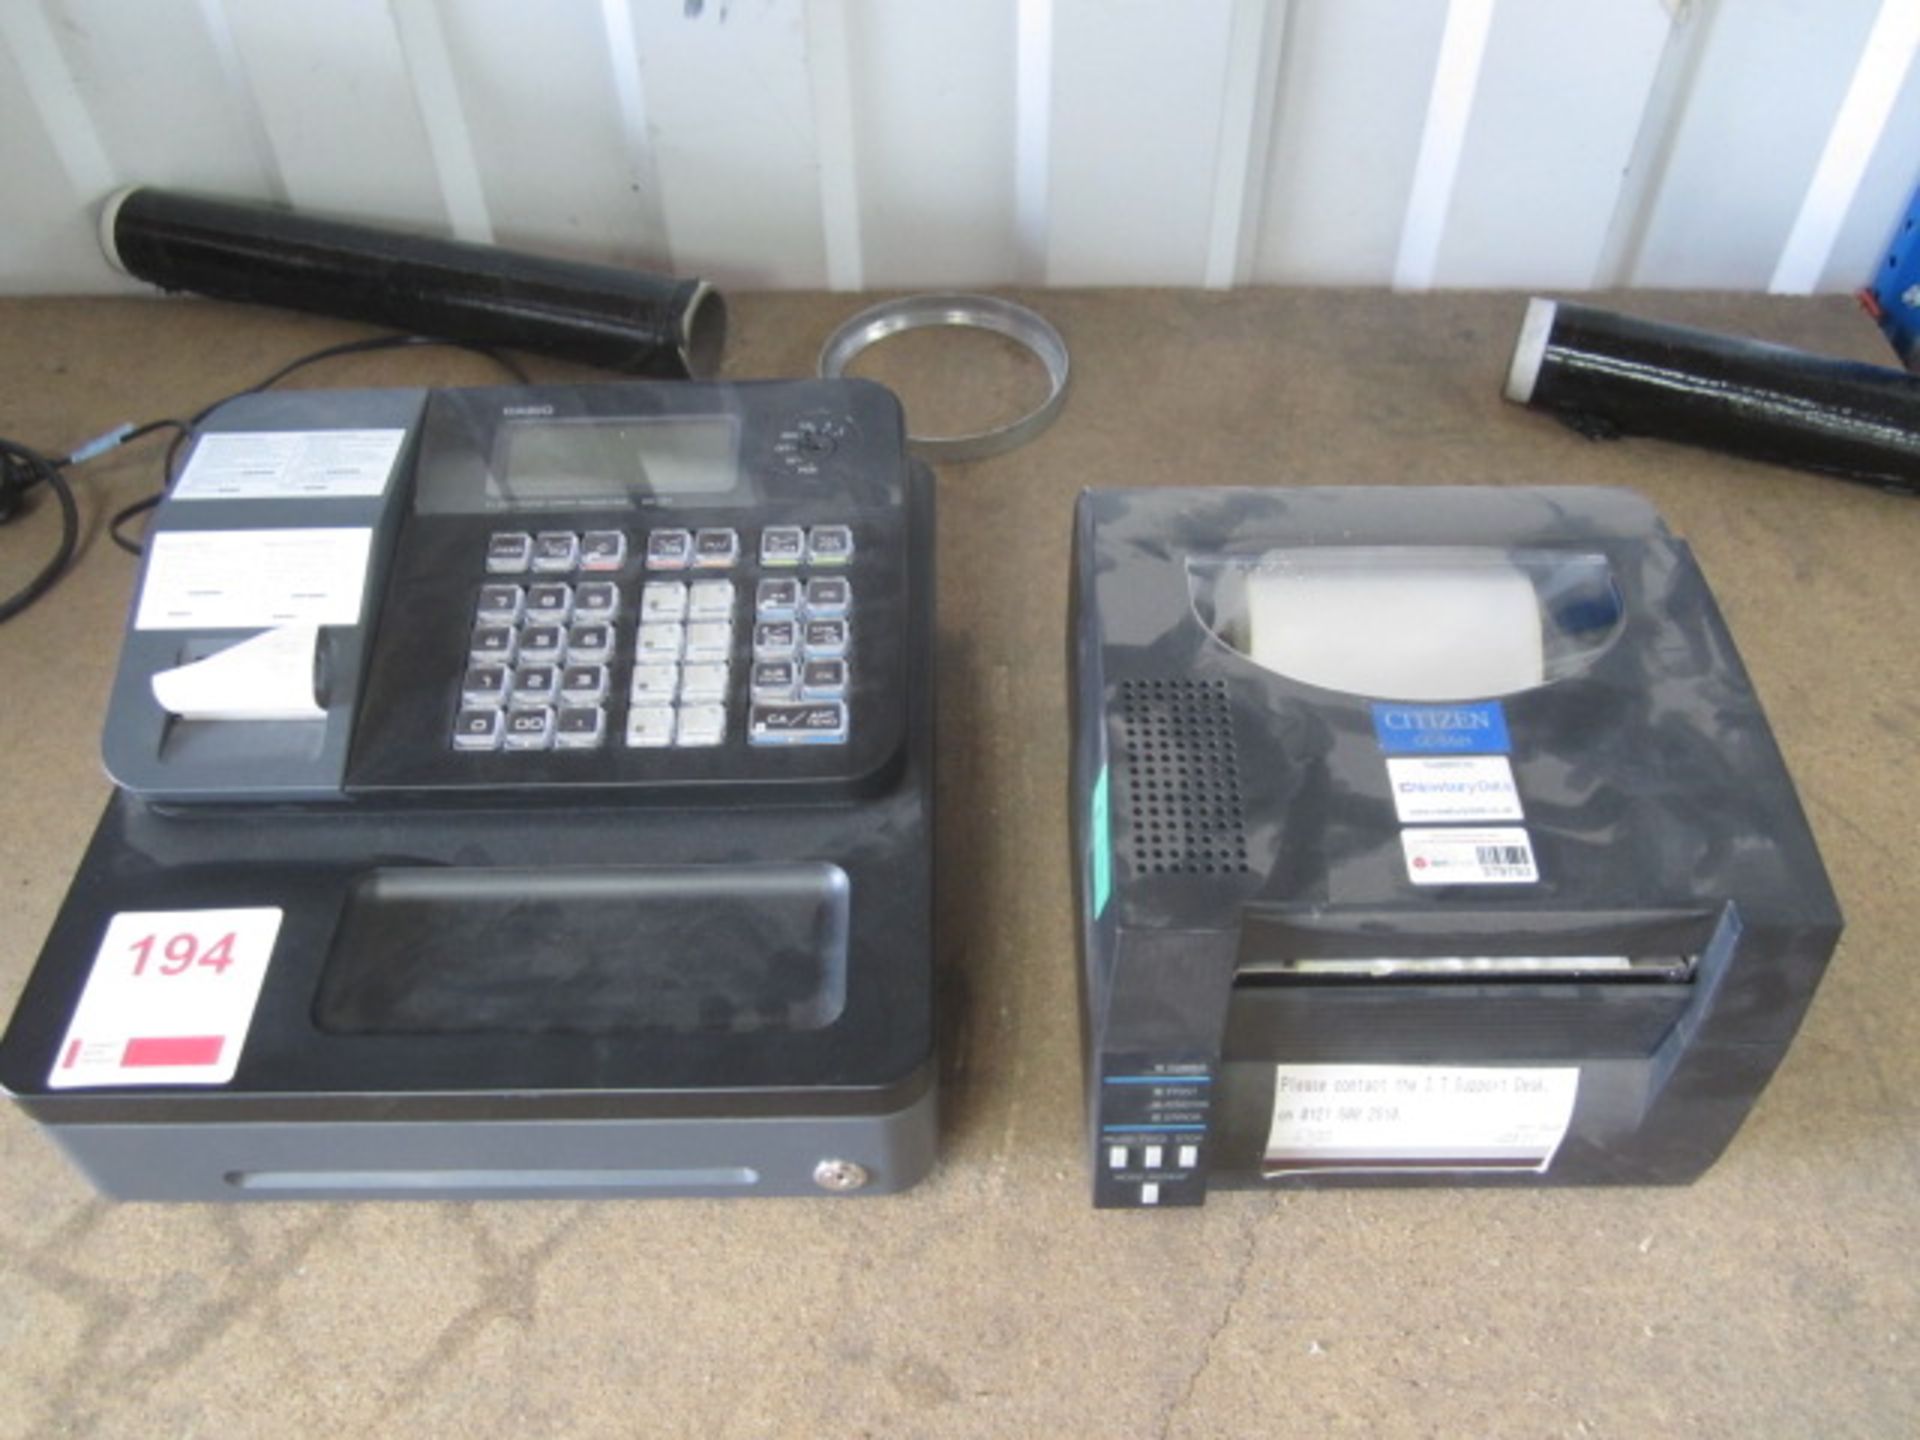 Citizen CL-5521 label printer, Casio SE-97 electronic cash register